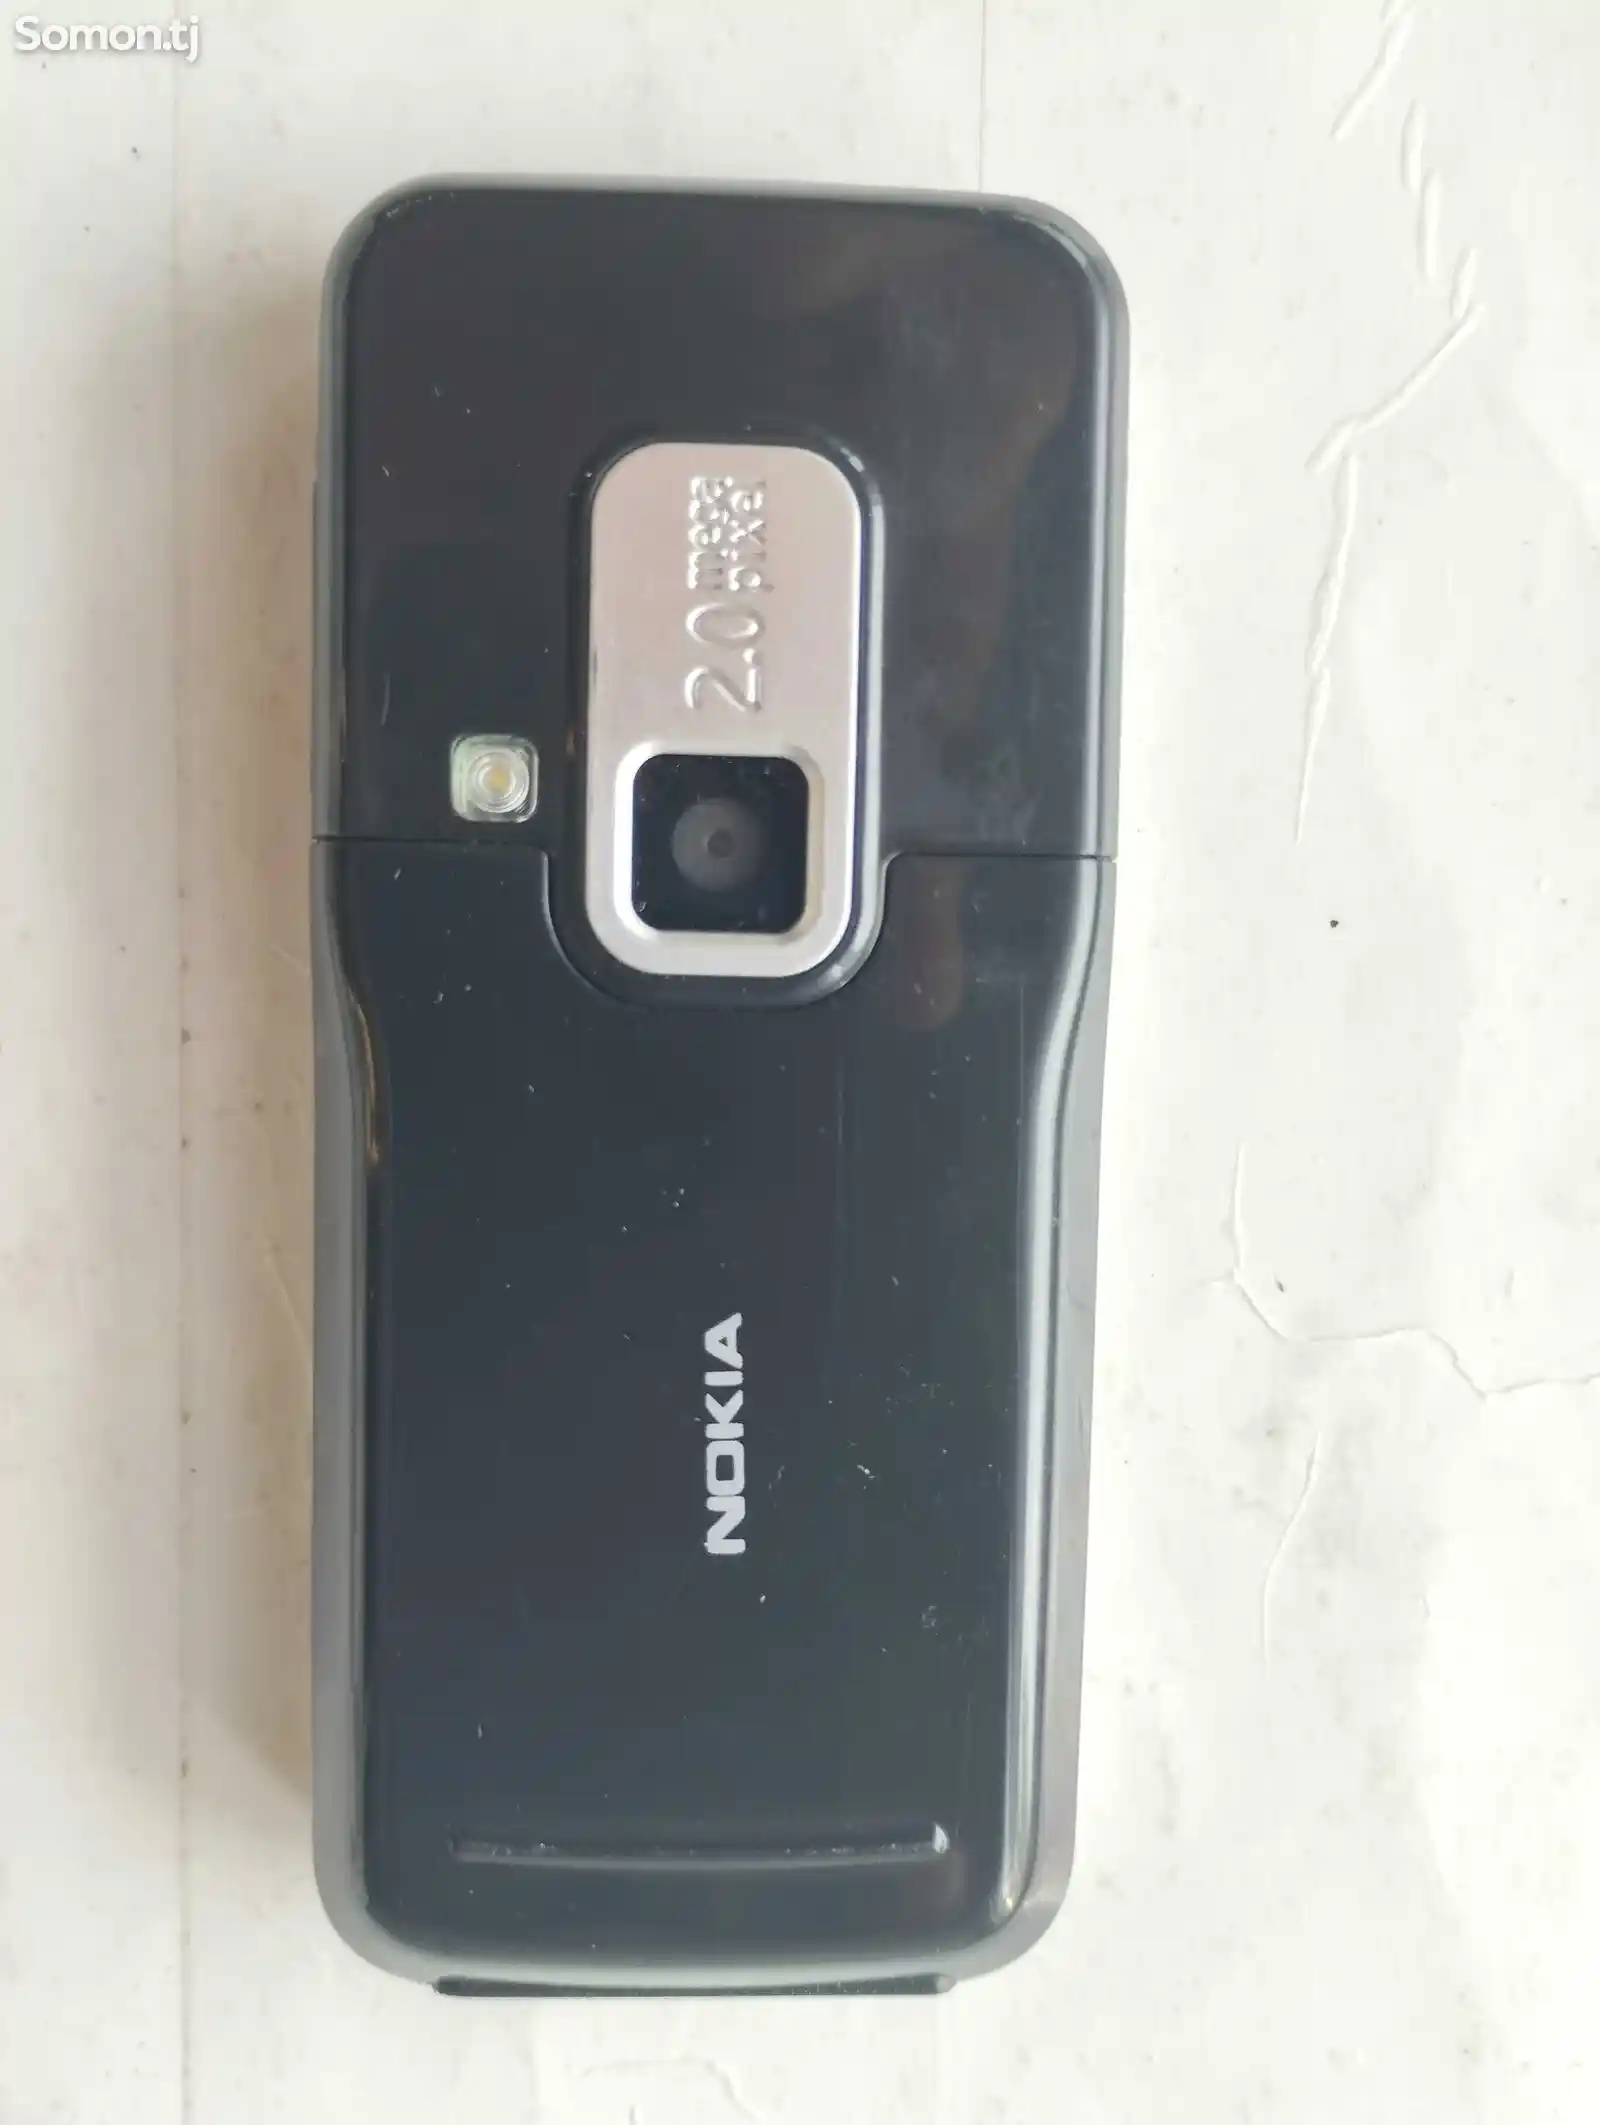 Nokia 6120 classic-6